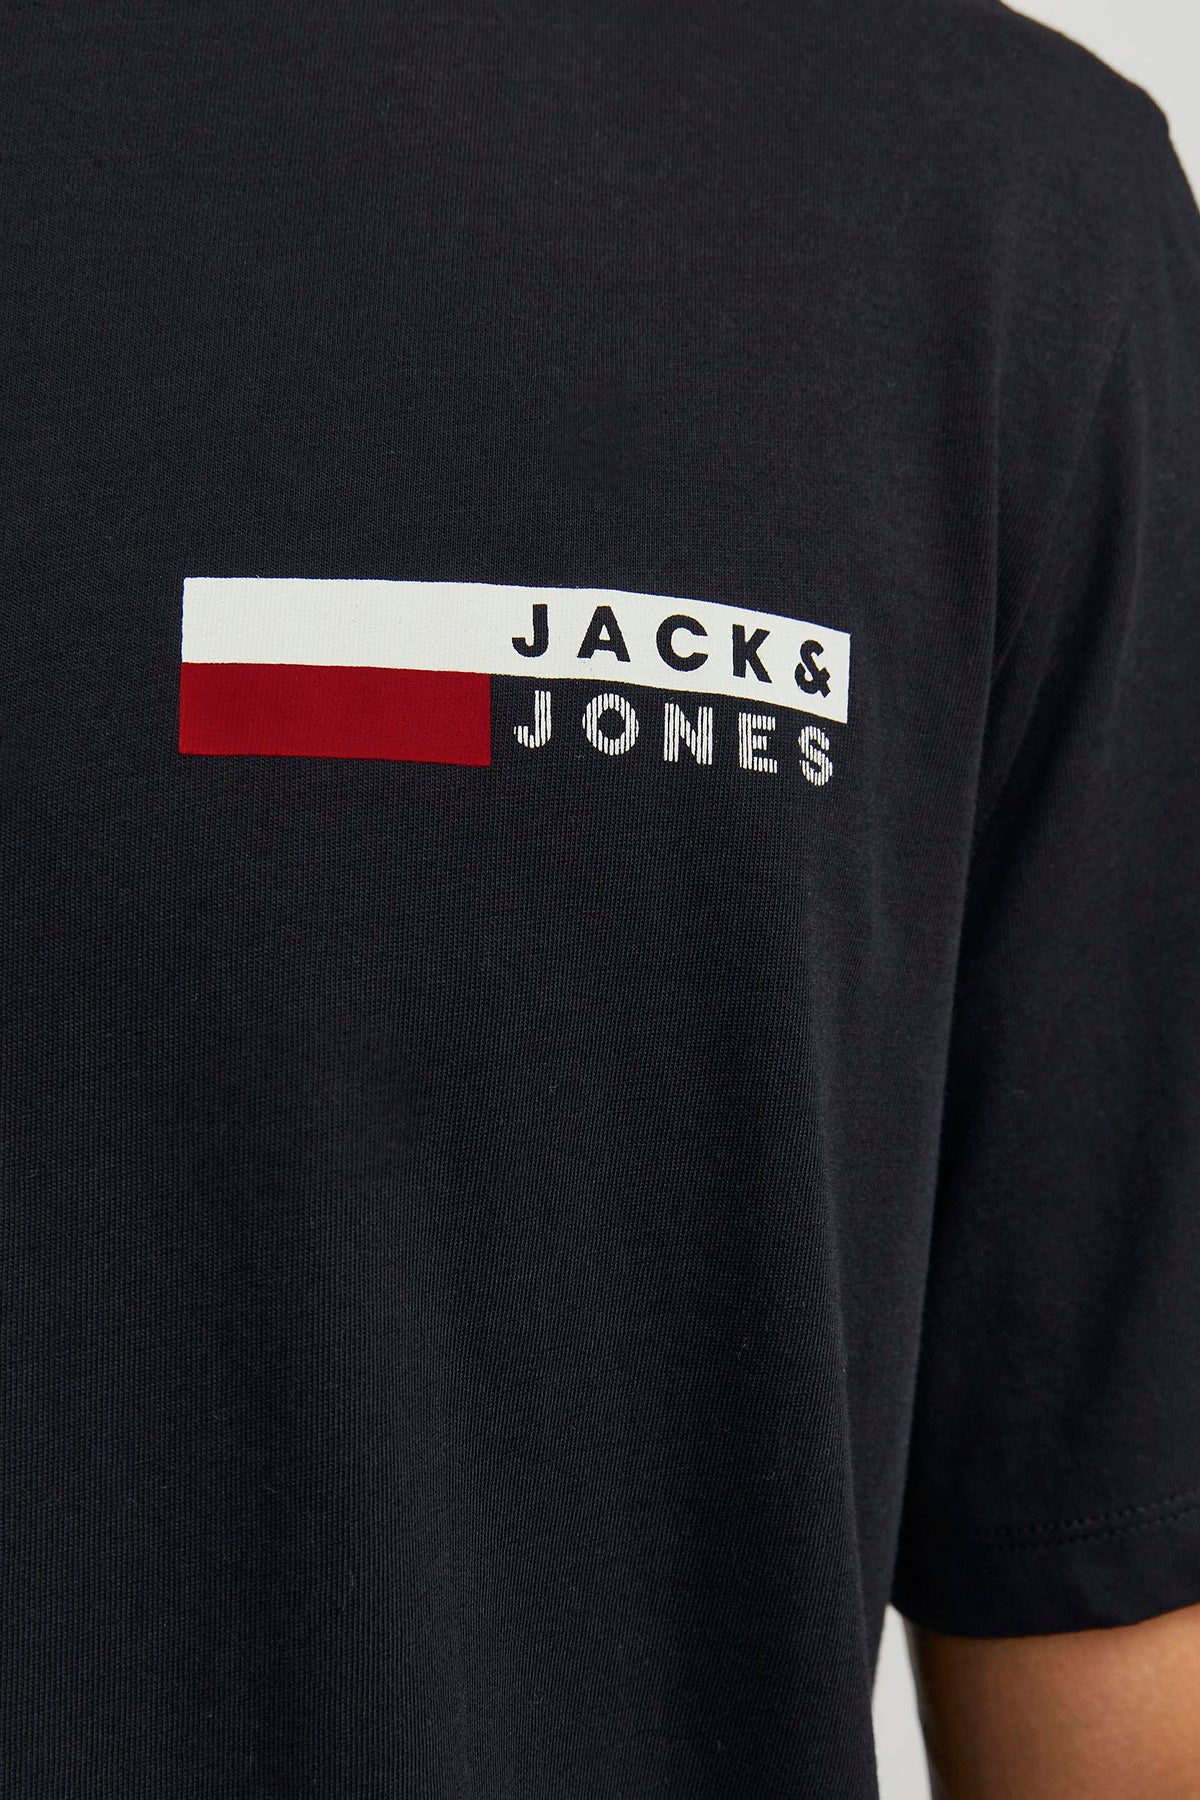 Jack & Jones Essentials Pamuklu Slim Fit Bisiklet Yaka Erkek T Shirt 12233999 SİYAH-KIRMIZI